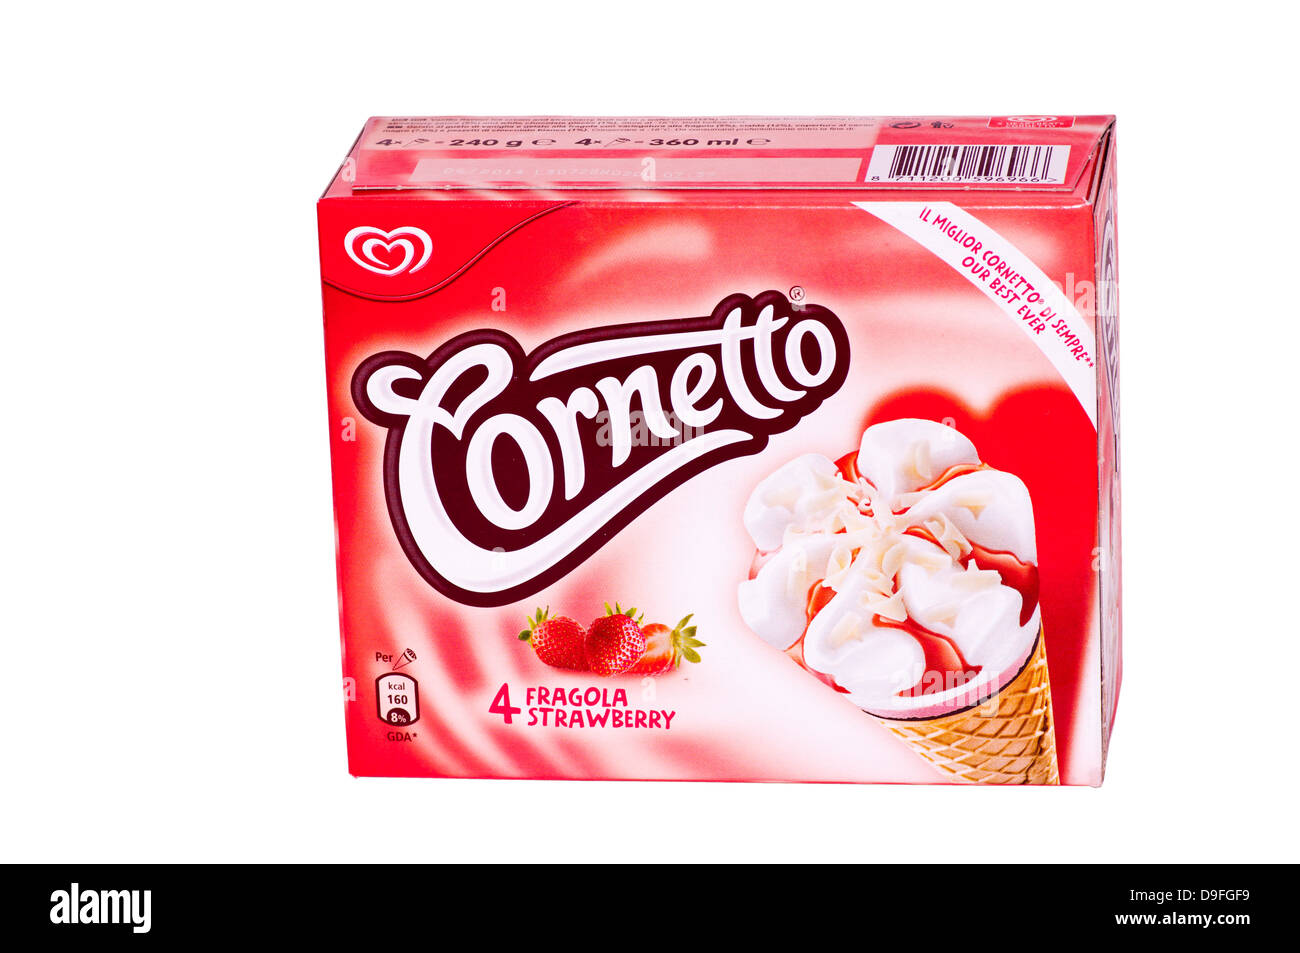 Box Of Strawberry Walls Cornetto Ice Cream Cones Stock Photo